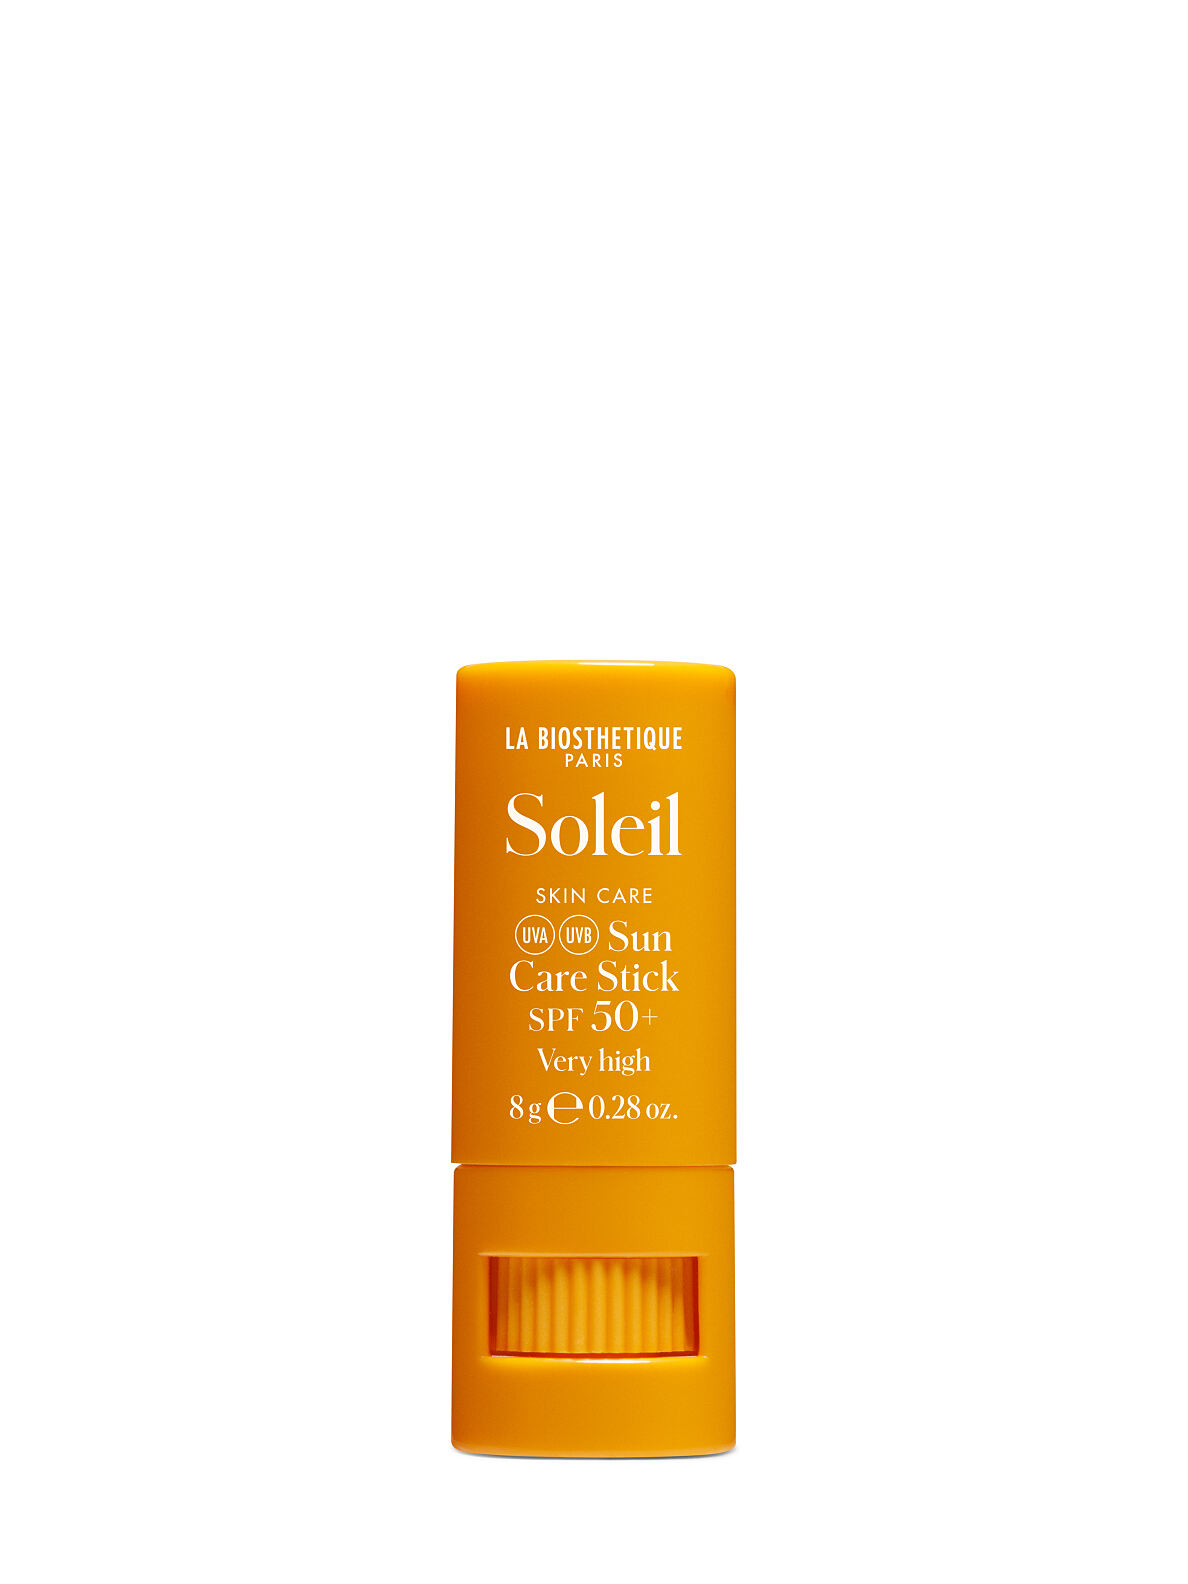 La Biosthétique_Skin-Soleil-002615-Sun-Care-Stick-SPF50-8g-EUR 23,00